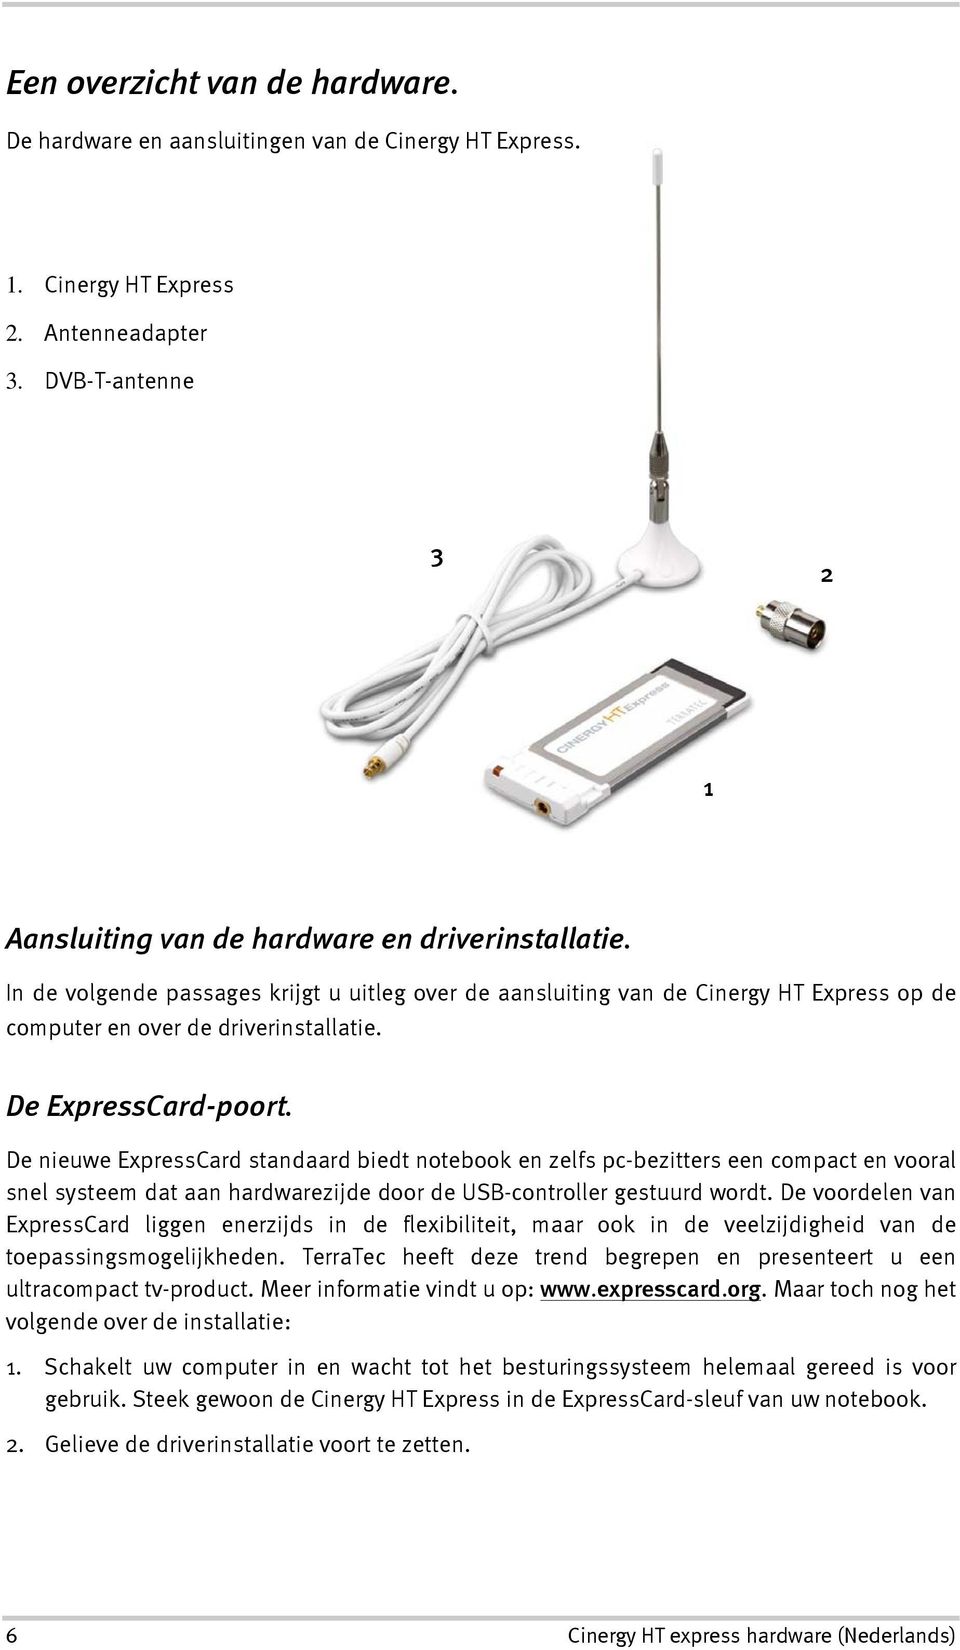 De nieuwe ExpressCard standaard biedt notebook en zelfs pc-bezitters een compact en vooral snel systeem dat aan hardwarezijde door de USB-controller gestuurd wordt.